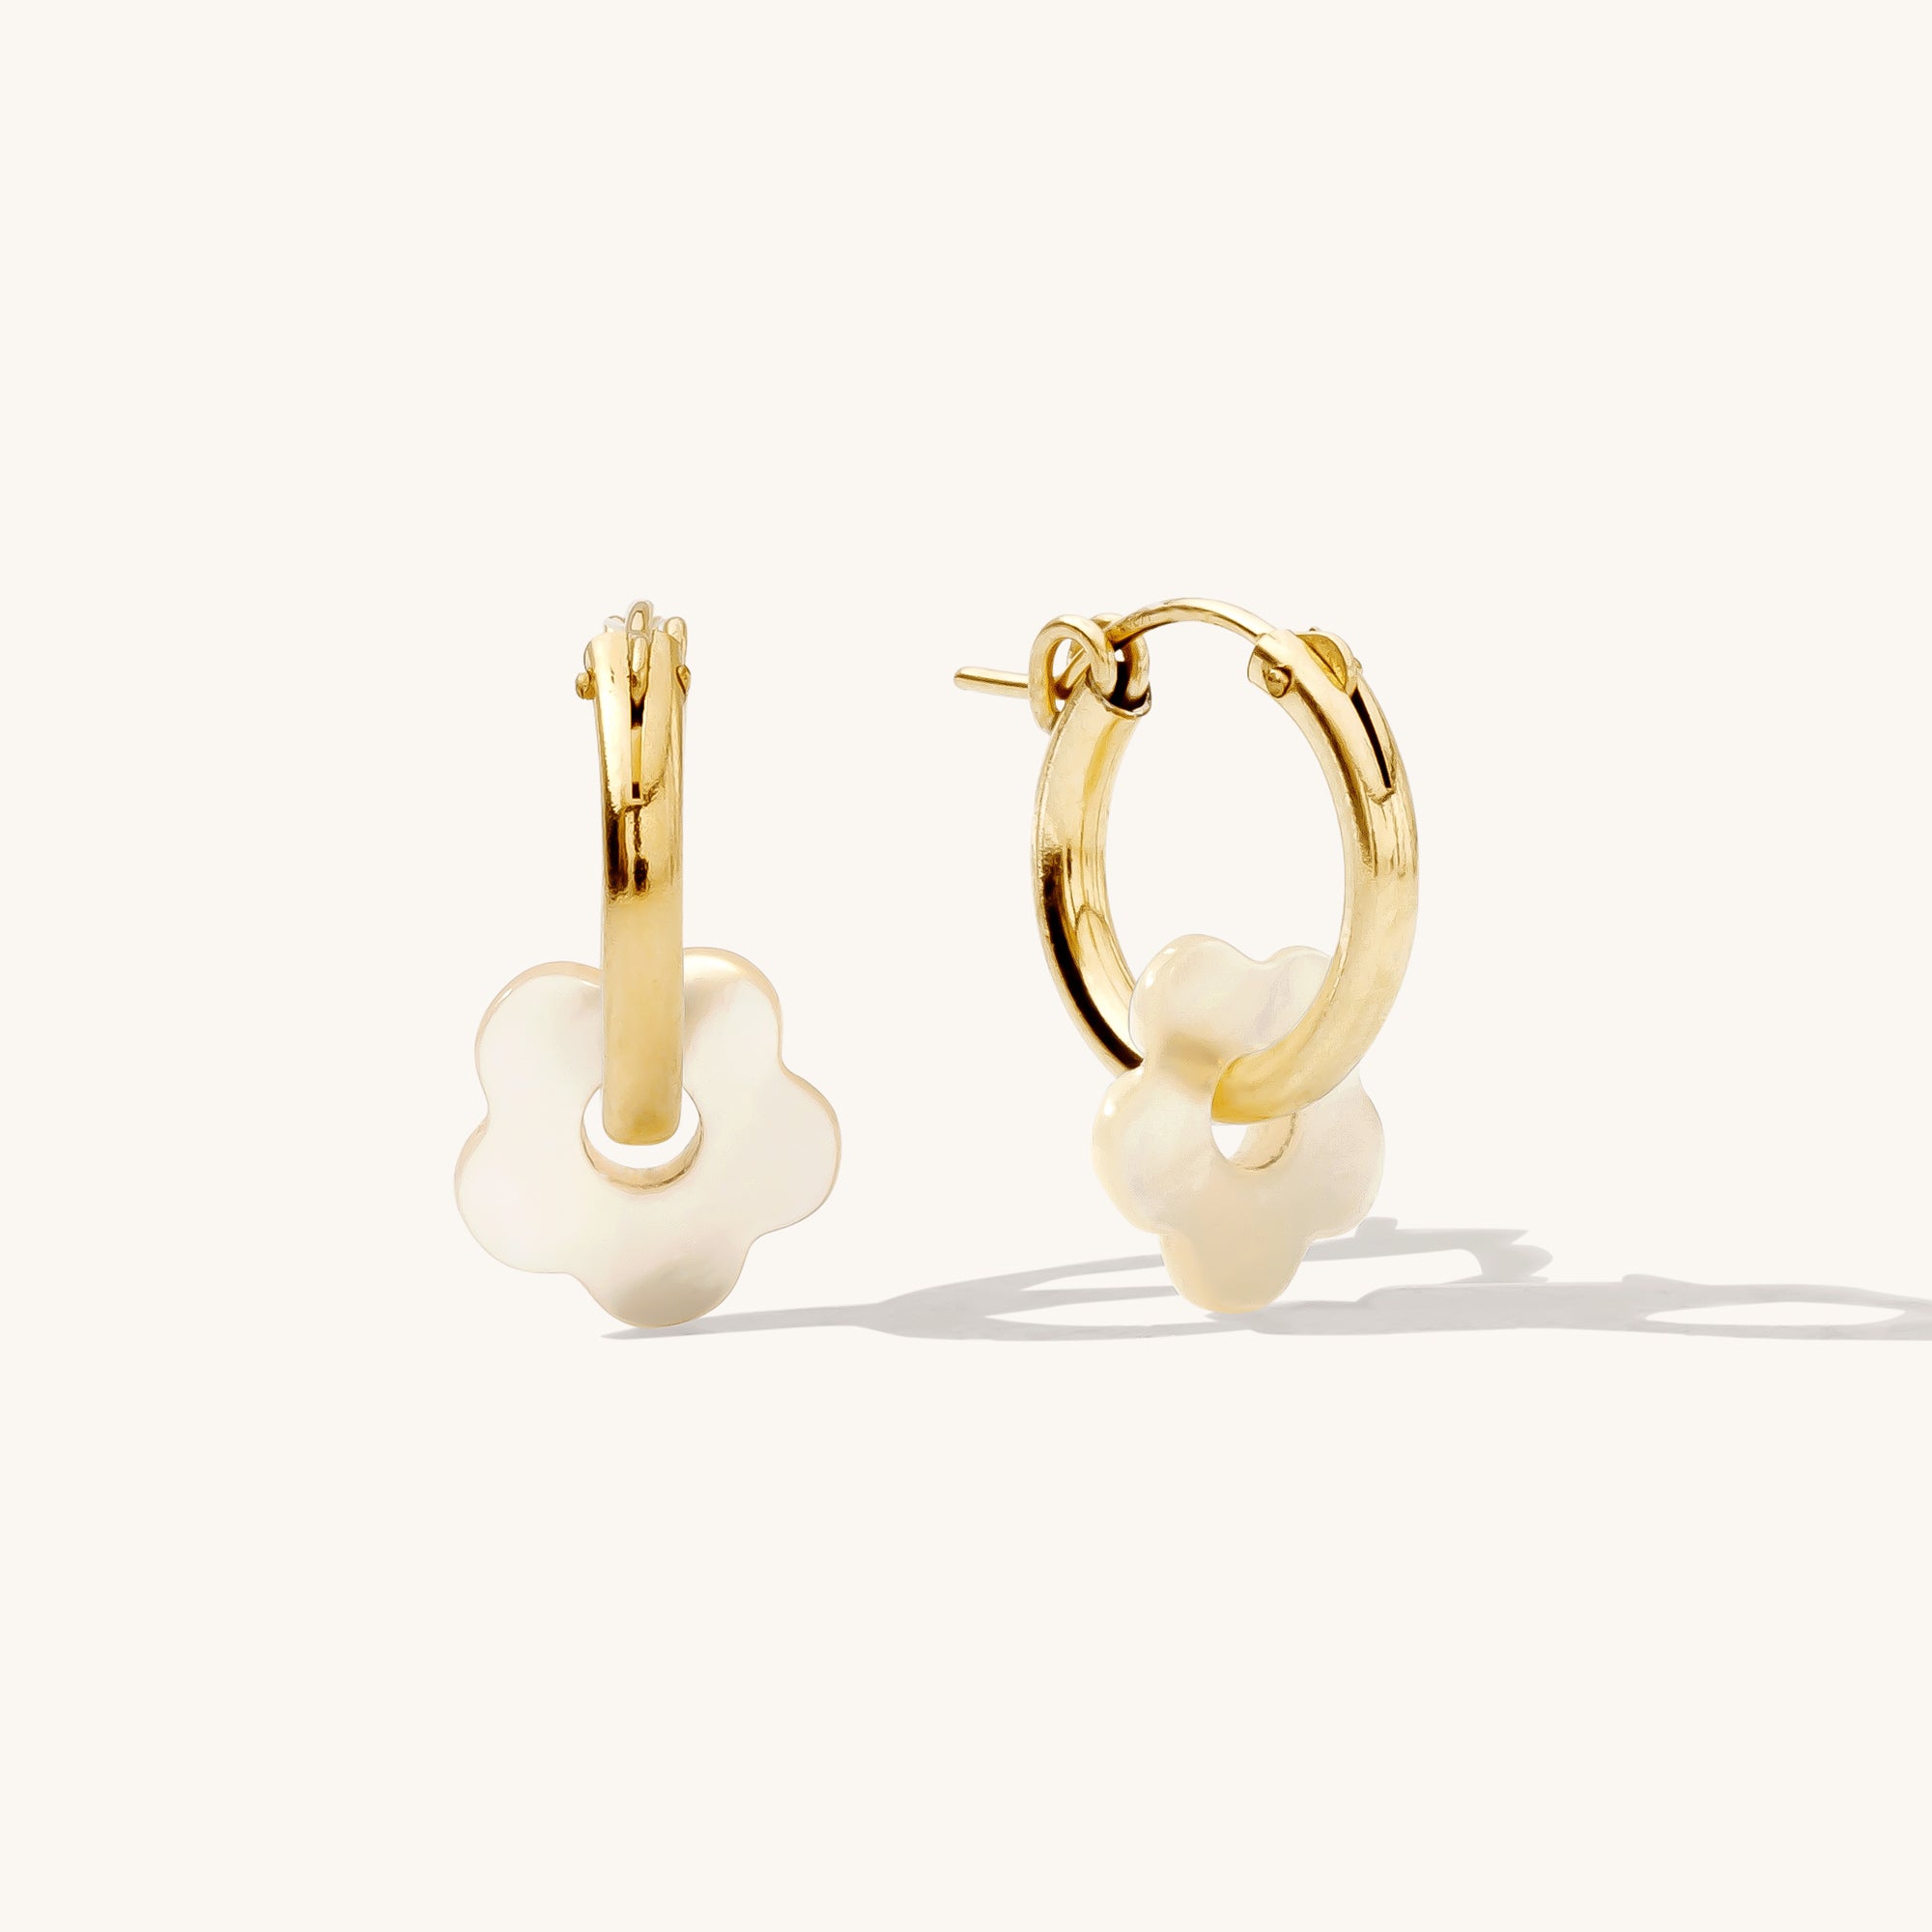 Women's Gold Pearl Hoop Earrings, Best Blooming Beauties Gold